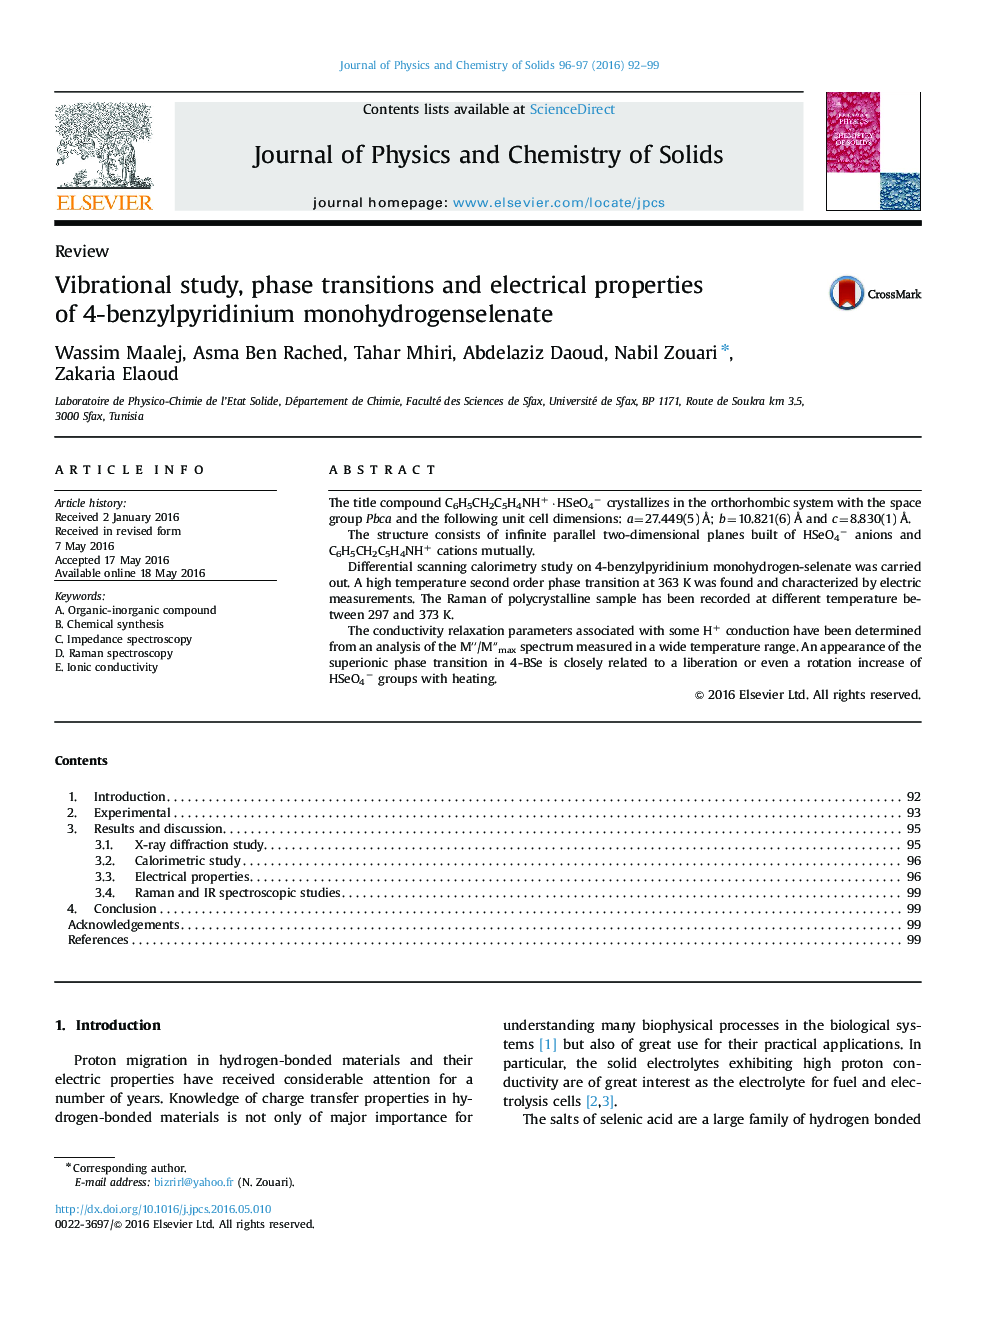 مطالعه ارتعاشی، انتقال فاز و خواص الکتریکی 4-بنزیل پیریدیوم مونوهیدروژنزلنات 